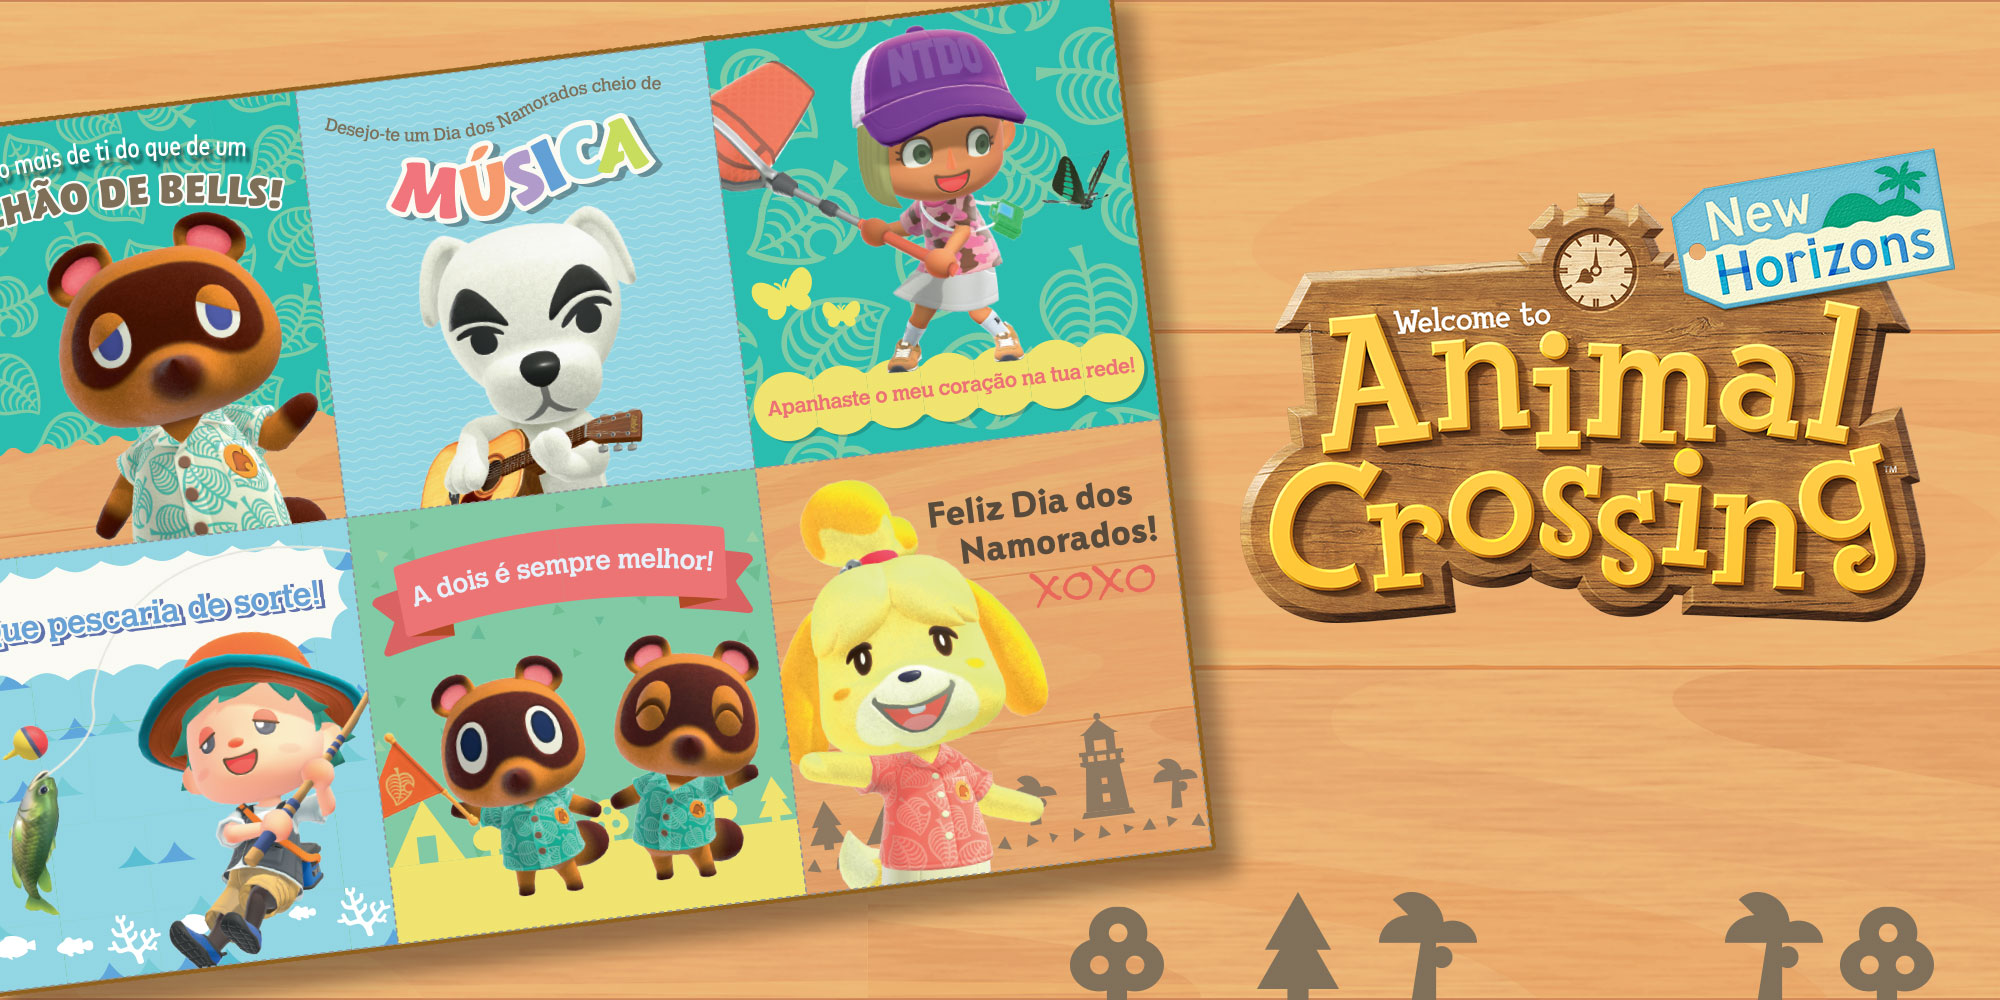 Festeja o Dia dos Namorados com os cartões românticos de Animal Crossing!